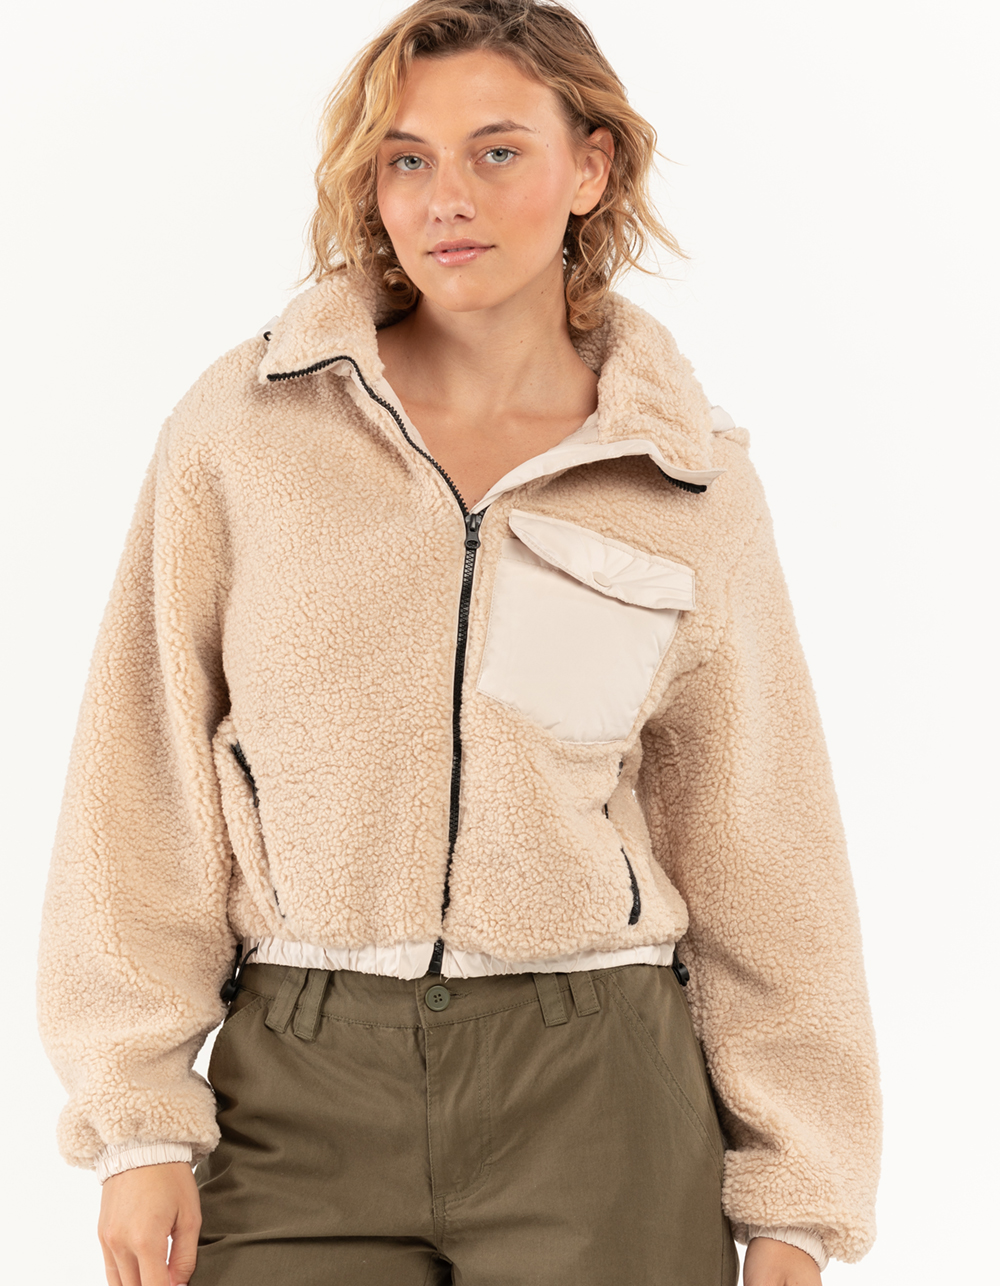 vendor-unknown Monogrammed Ladies Full Zip Sherpa Jacket Natural